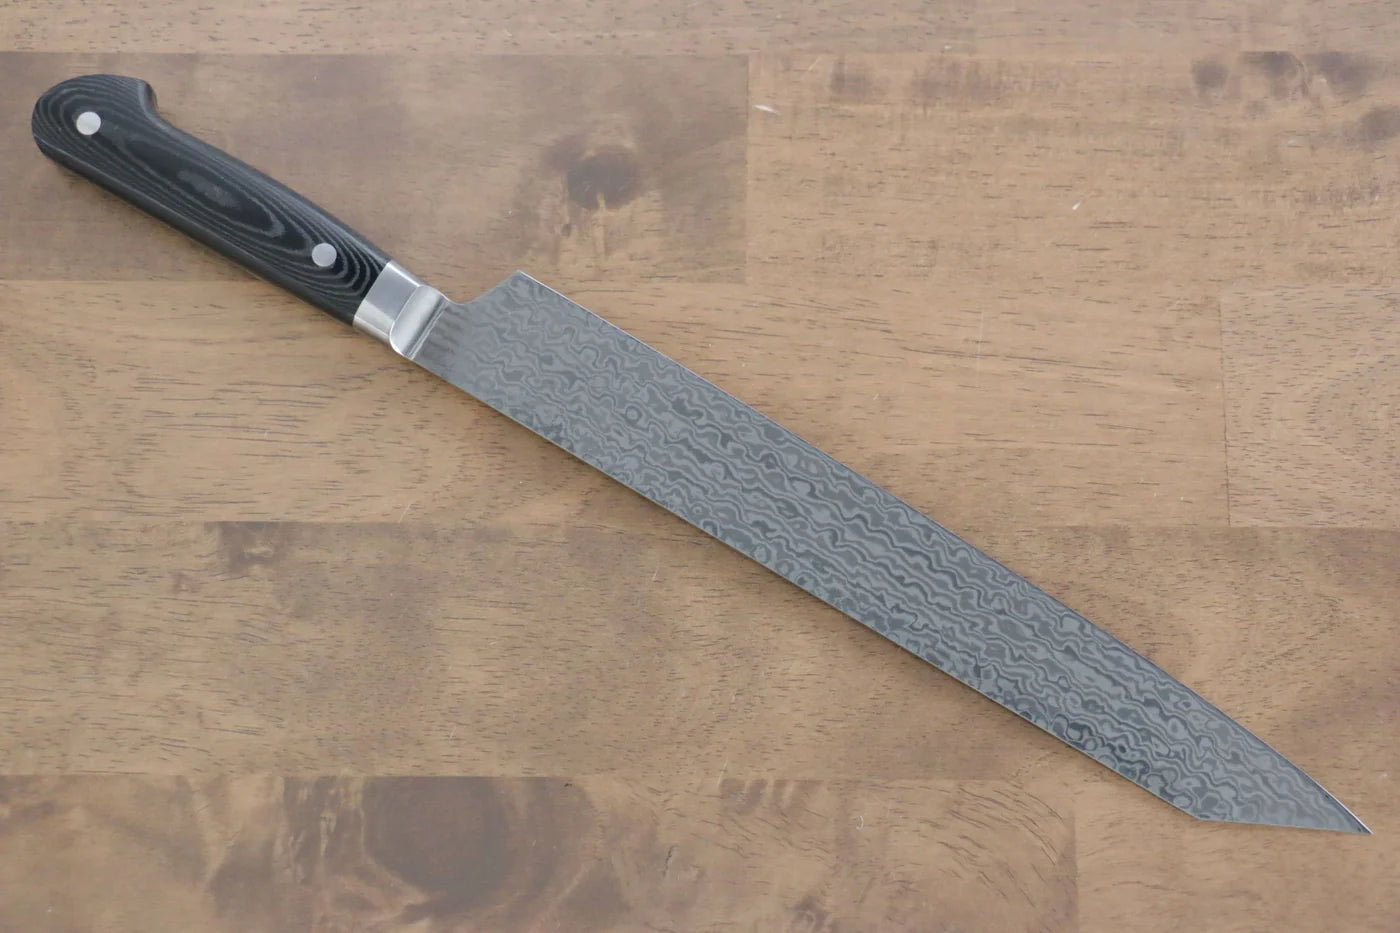 Marke Sakai Takayuki Kein Kern Damaststahl Spezialisiertes Sashimi-Fischmesser Yanagiba schwertförmige Klinge Japanisches Messer 260 mm schwarzer Micarta-Griff